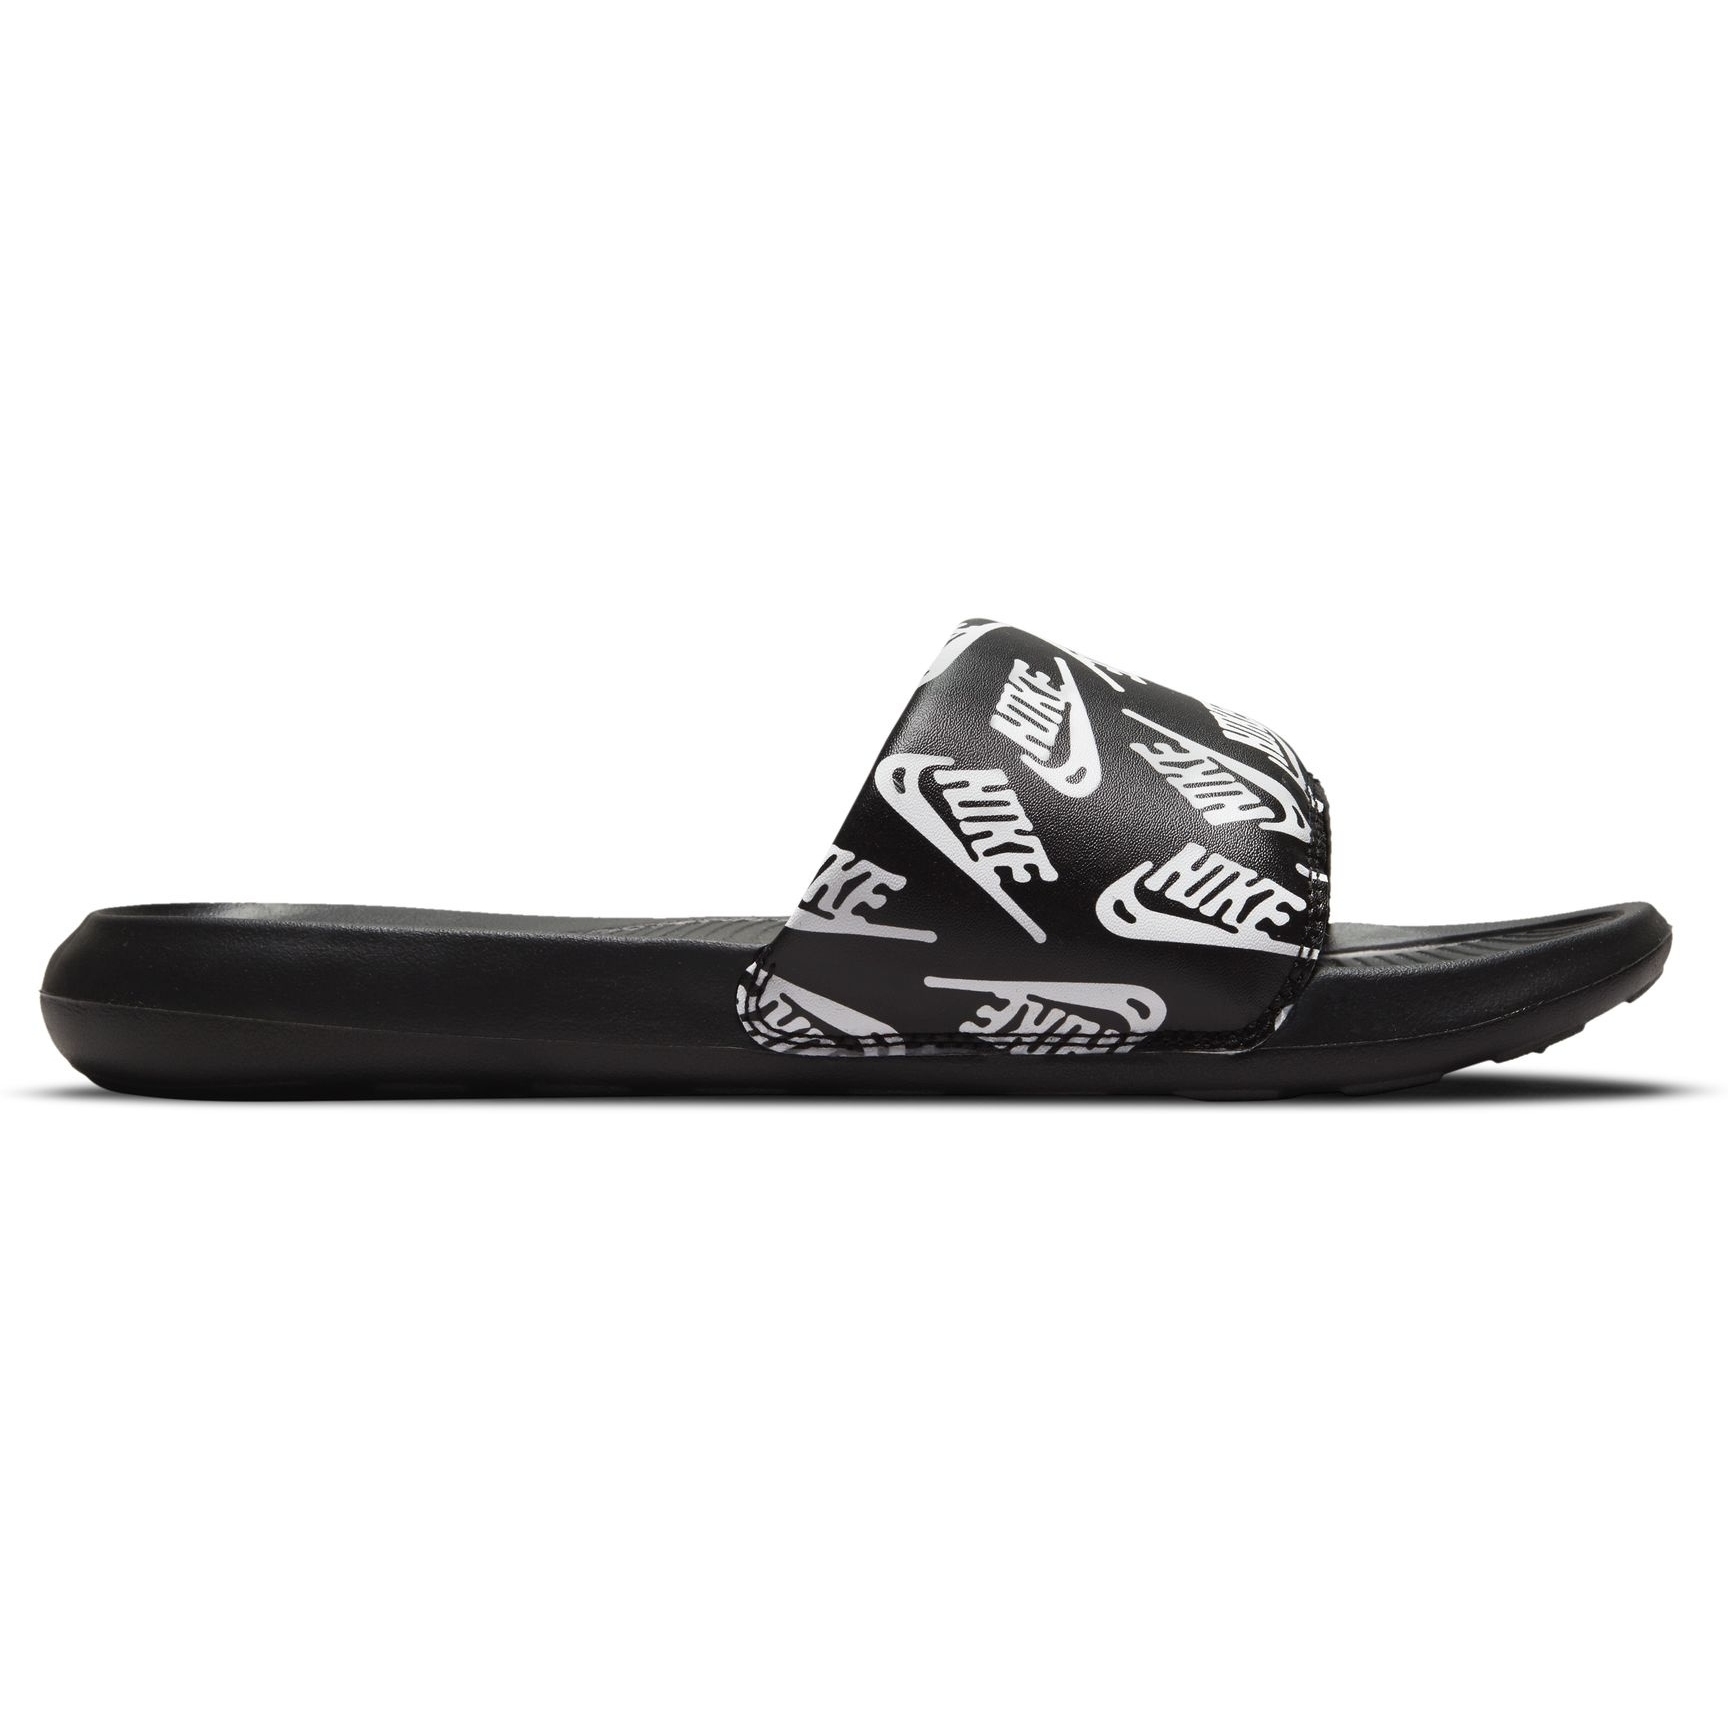 Produktbild von Nike Victori One Herren-Slides mit Print - schwarz/weiß-schwarz CN9678-008